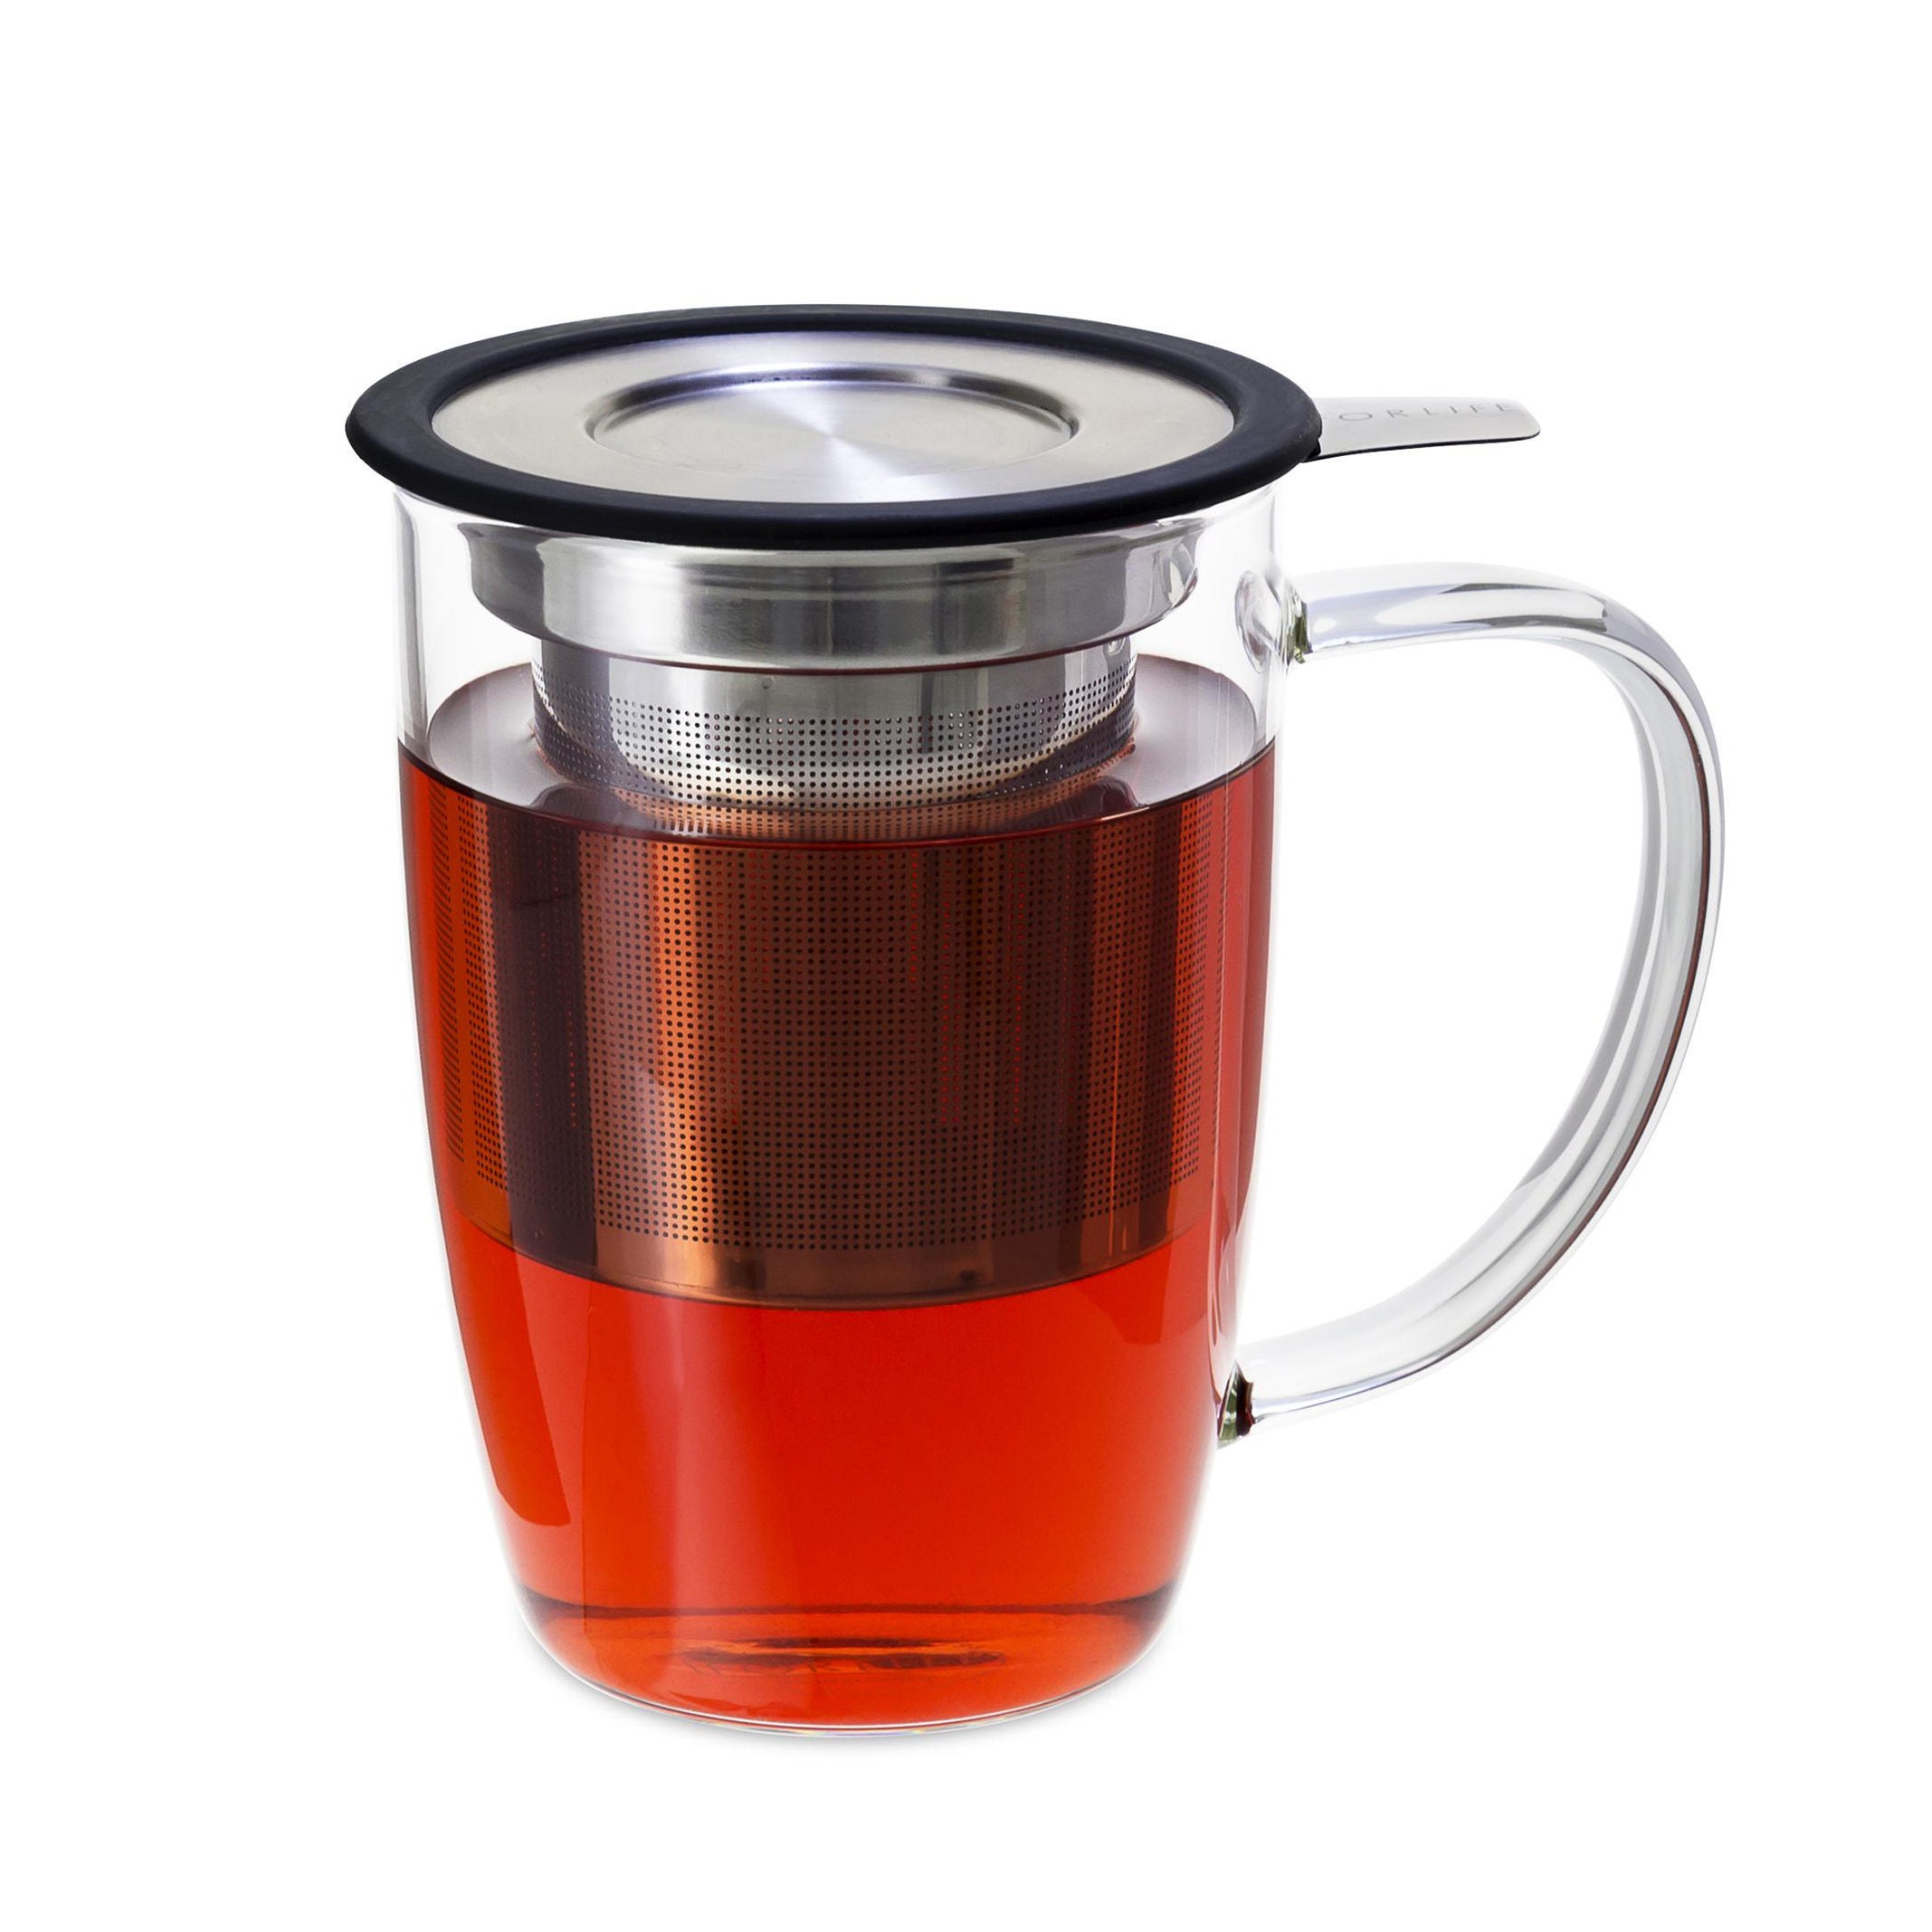 Кружки для заварки. Glass Tea Infuser.. Кружки для заварки чая. Стеклянная Кружка для заварки чая. Заварка для кружки.